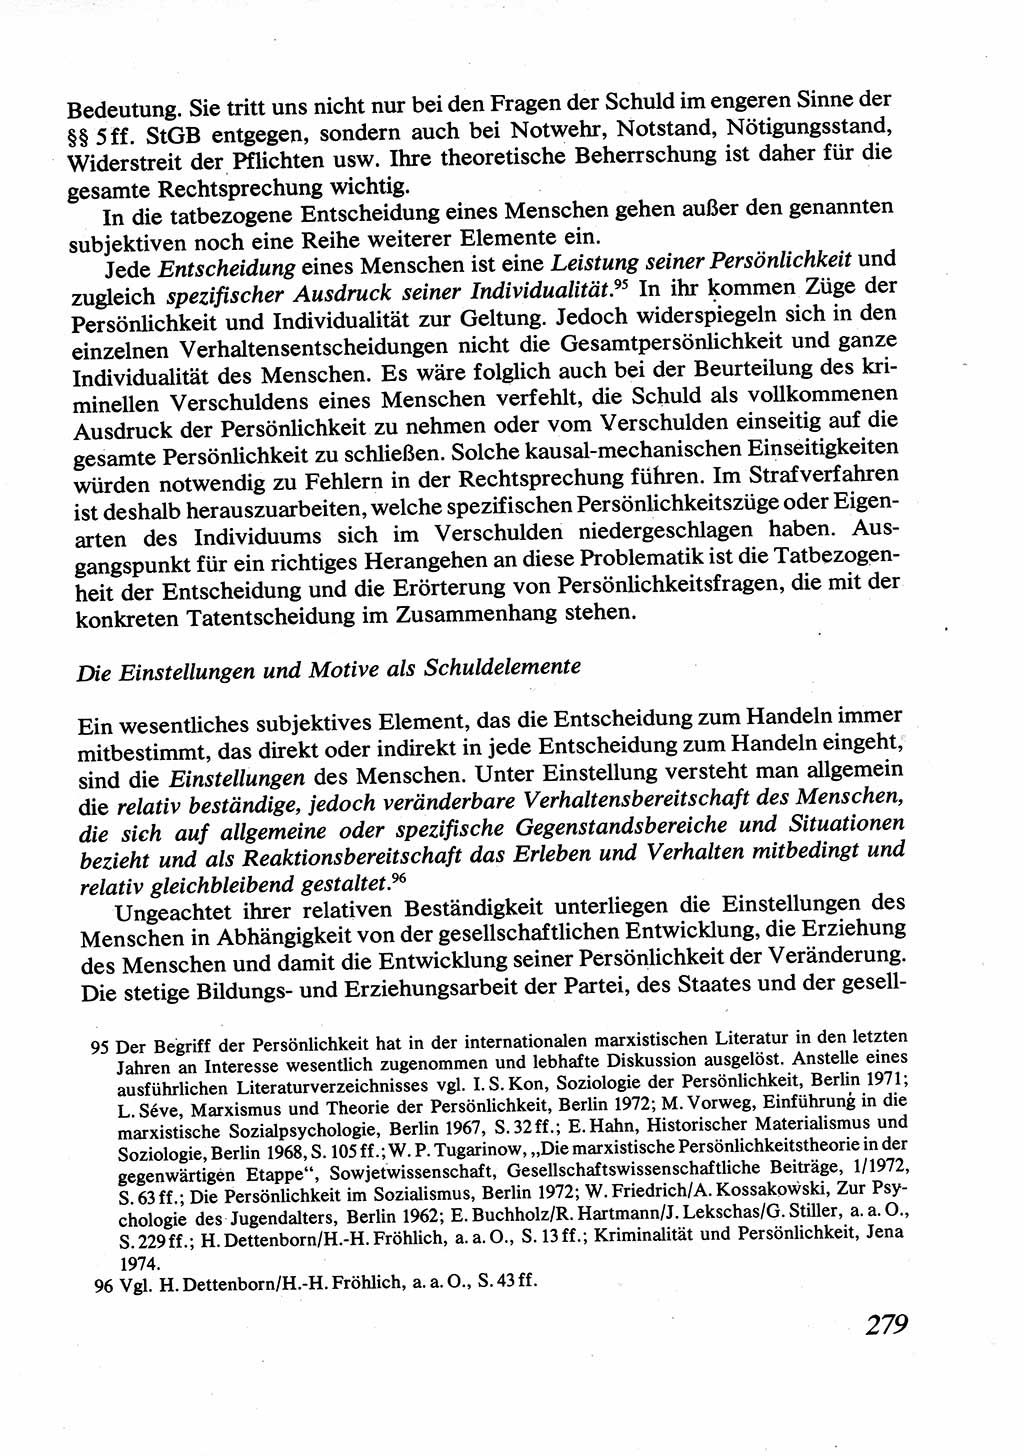 Strafrecht [Deutsche Demokratische Republik (DDR)], Allgemeiner Teil, Lehrbuch 1976, Seite 279 (Strafr. DDR AT Lb. 1976, S. 279)